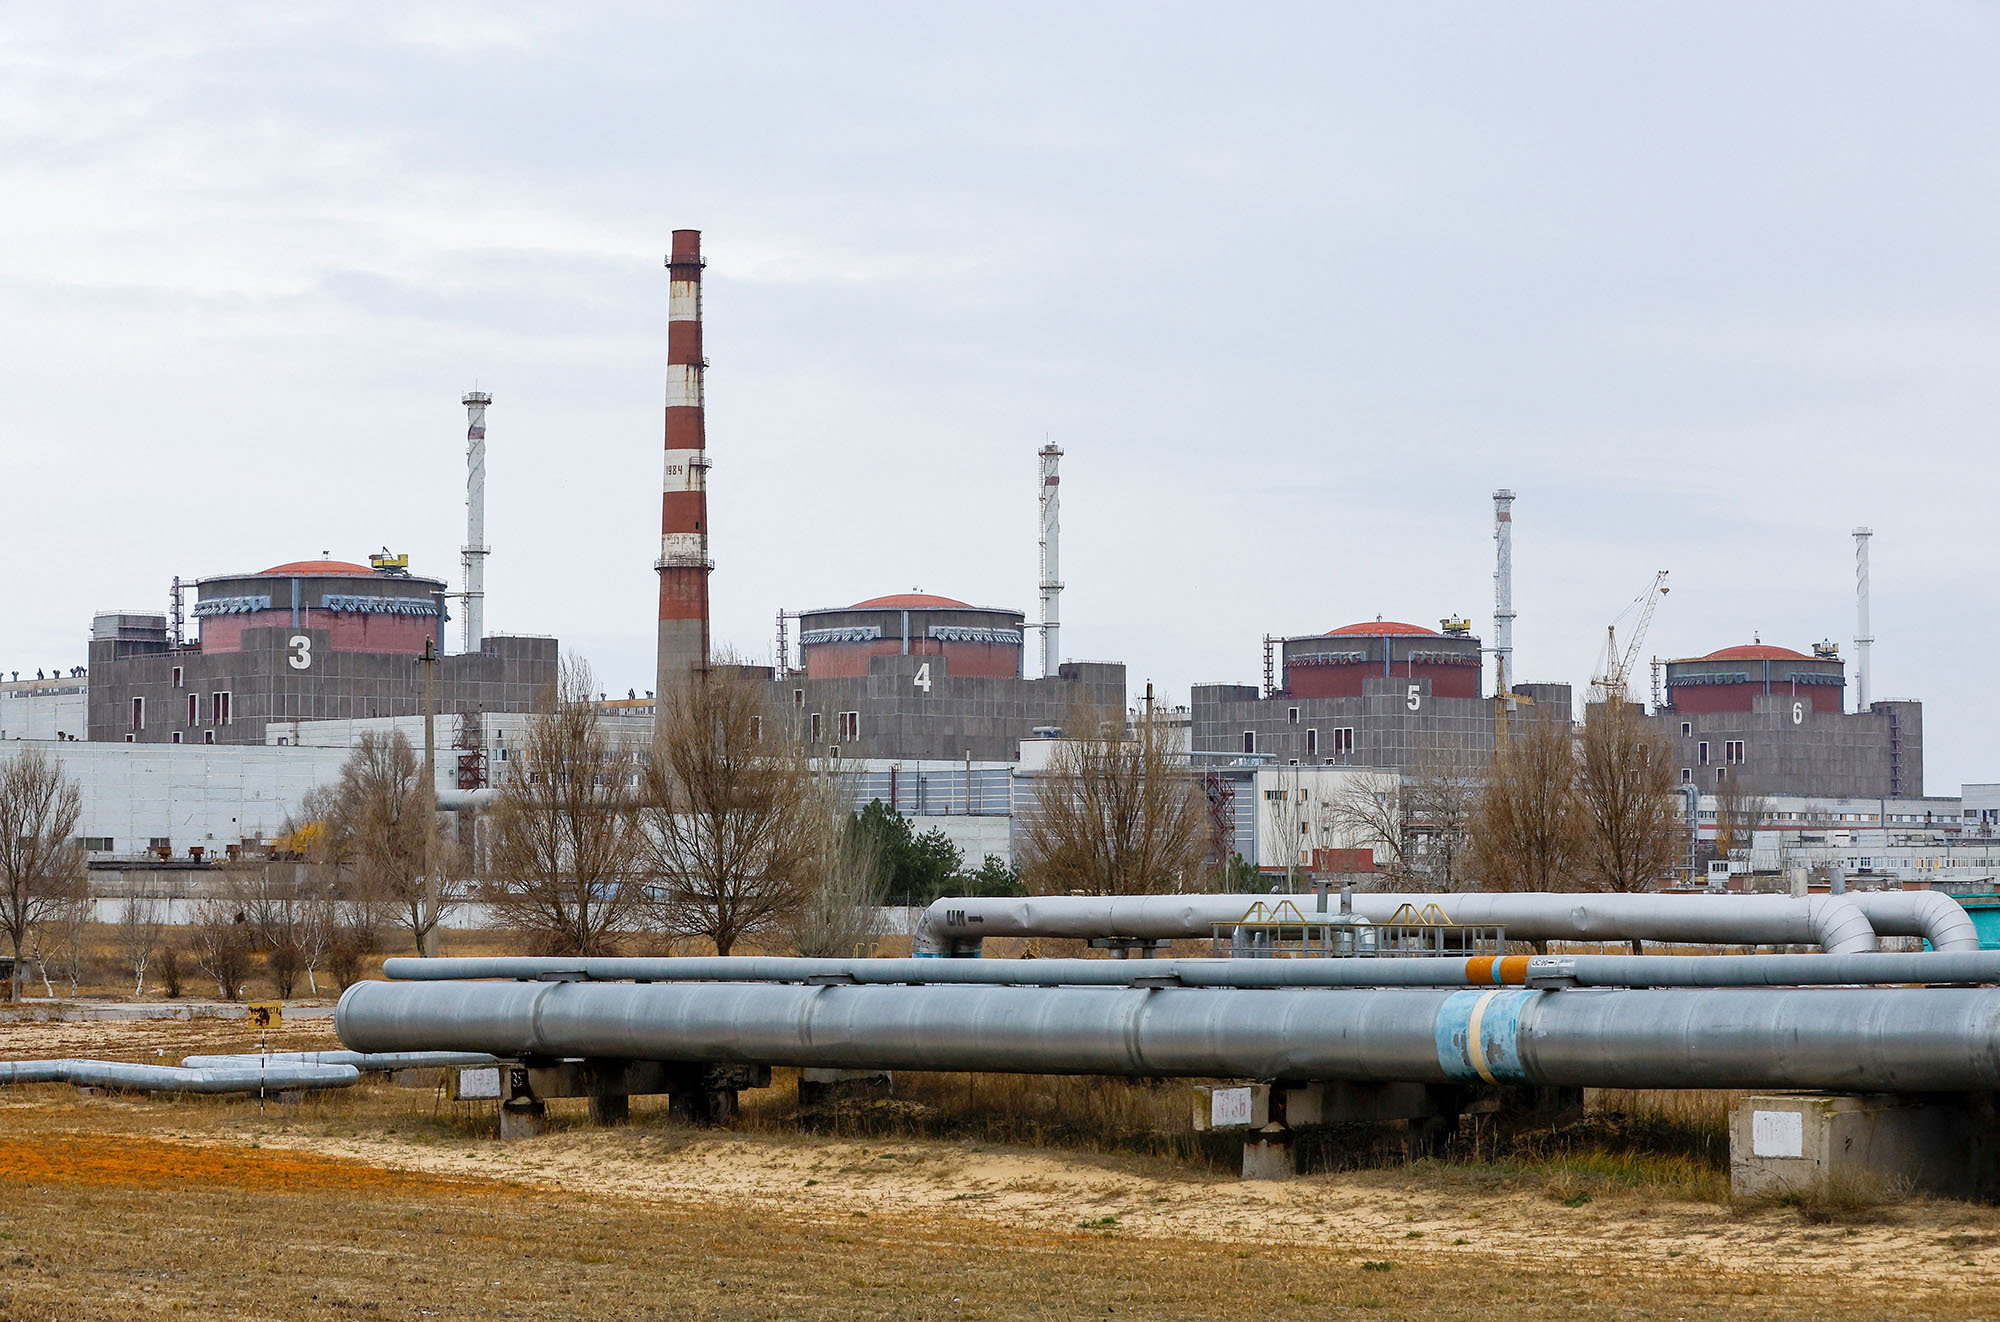 The Zaporozhye nuclear power plant outside the city of Ernekhodar in the Zaporozhye region of Ukraine on November 24.